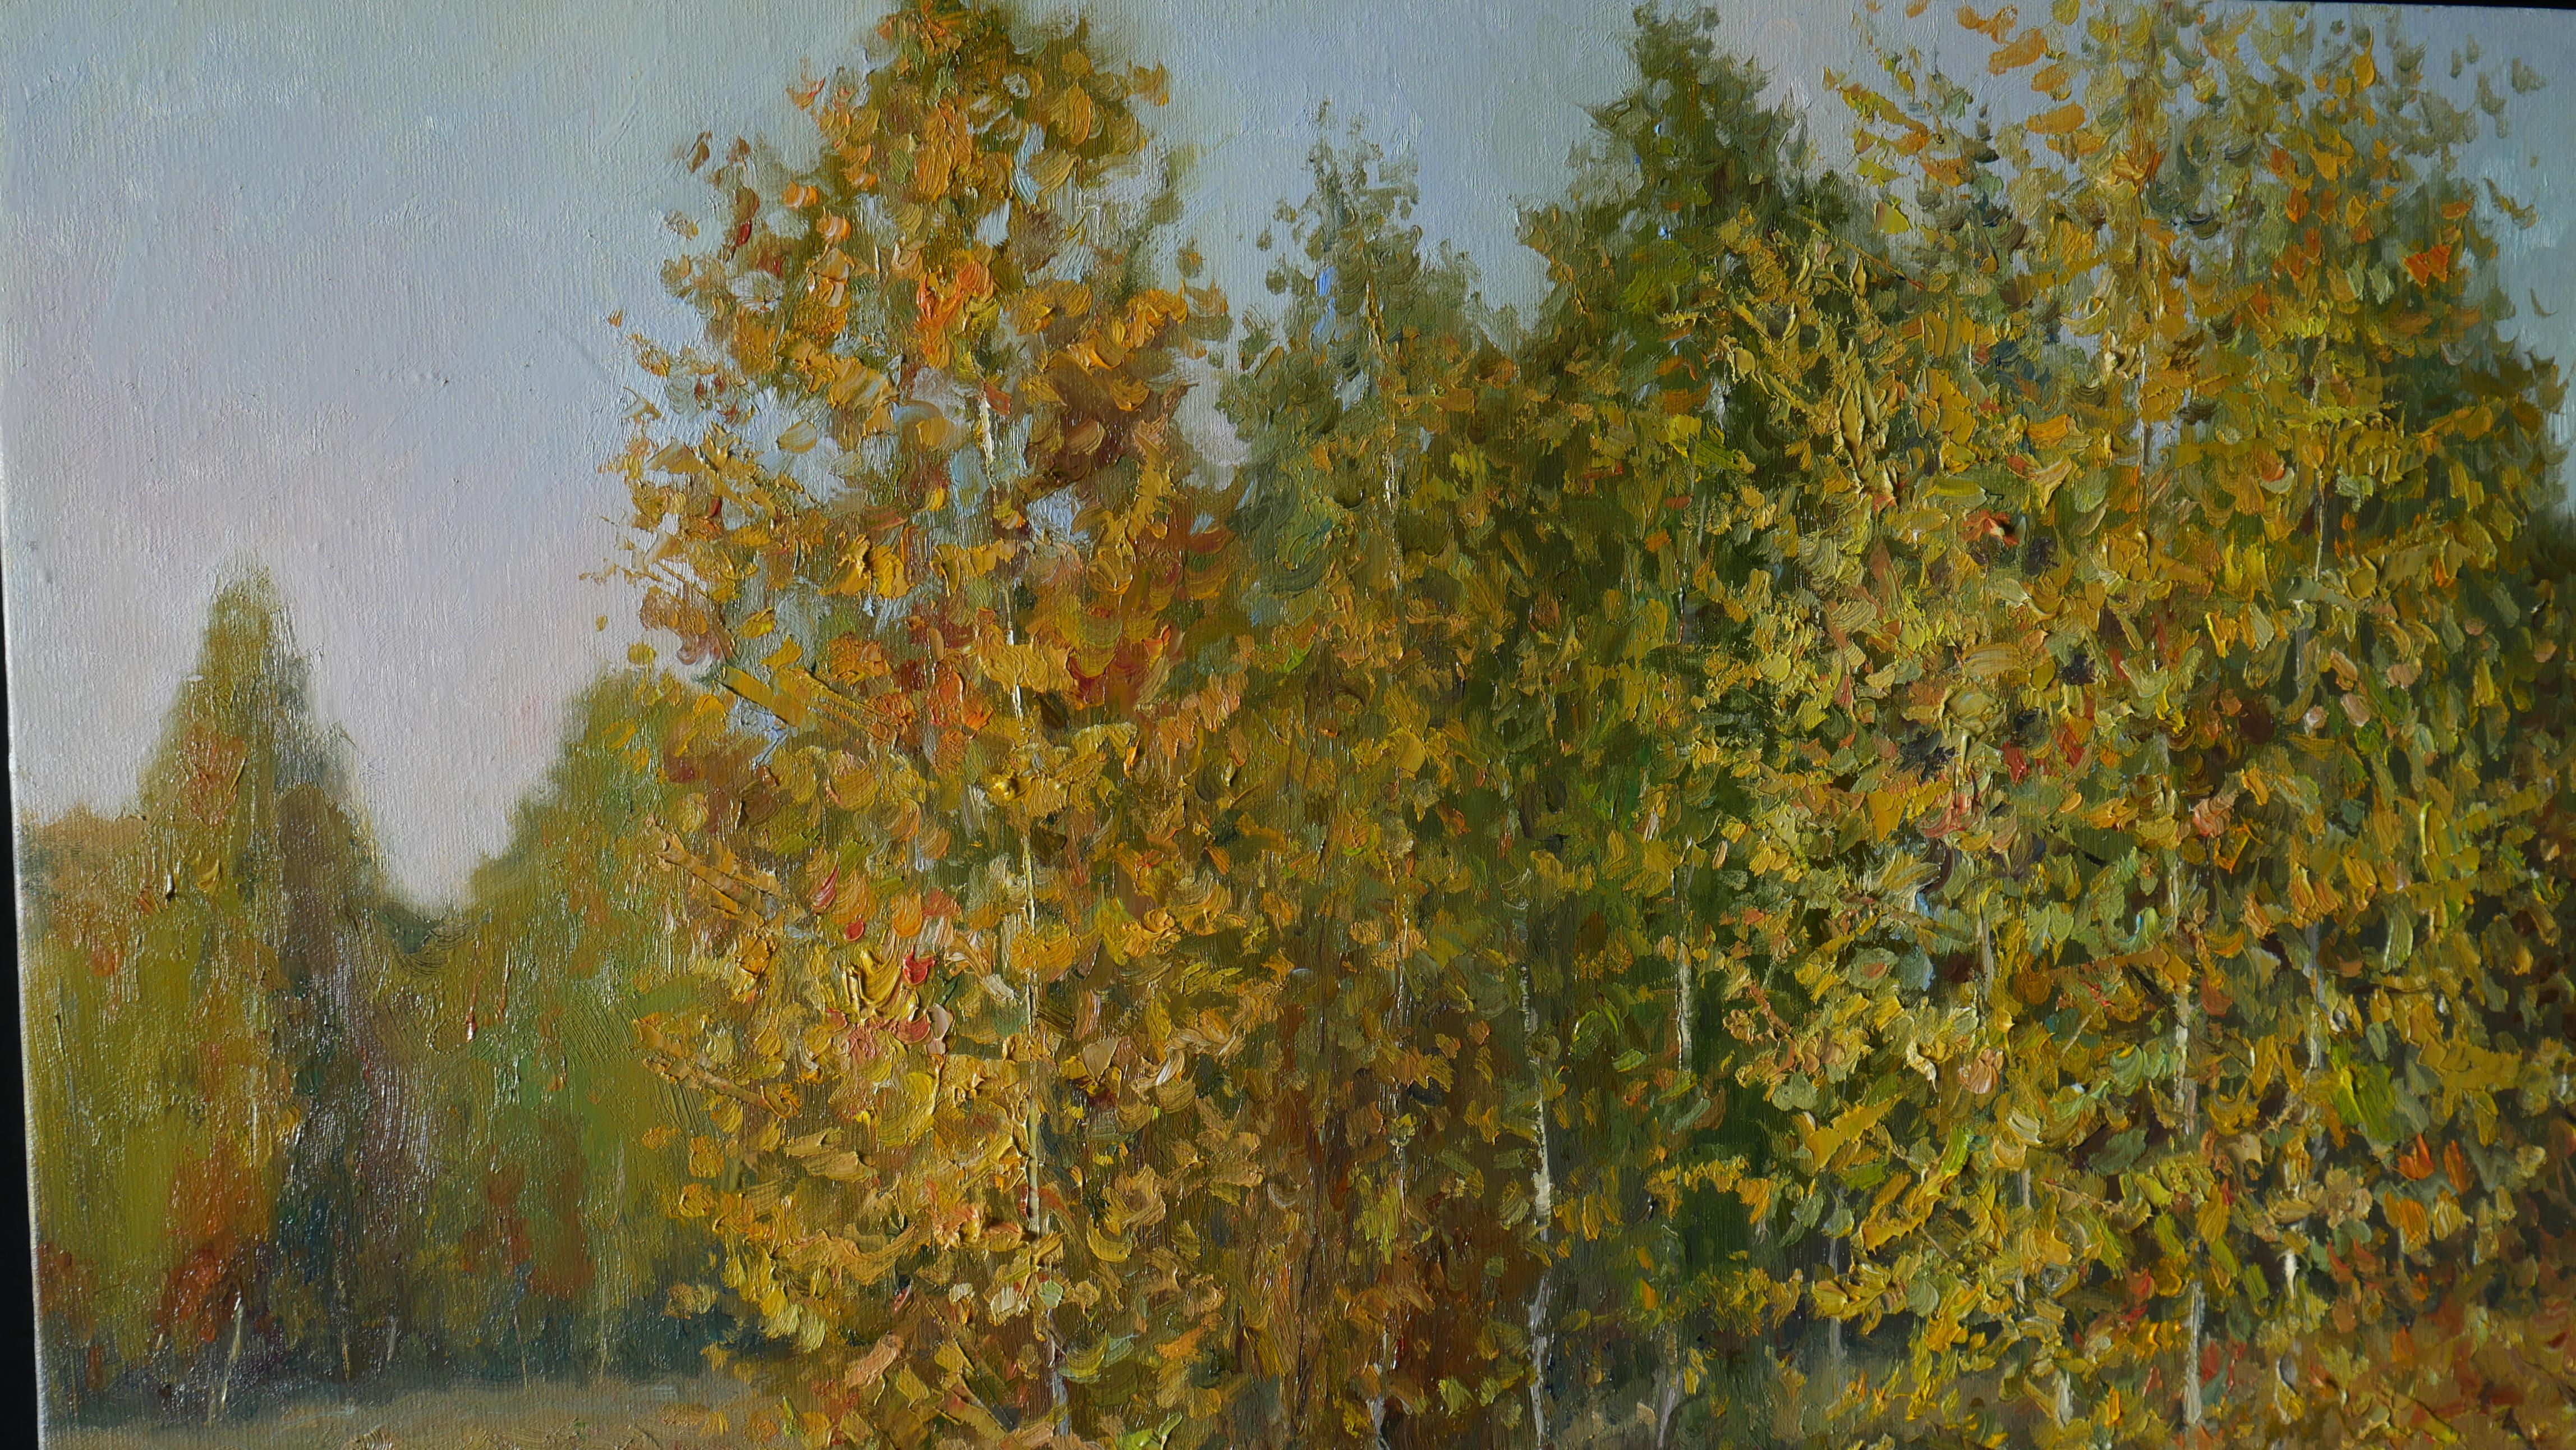 Sunny Golden Autumn - original autumn landscape painting For Sale 1